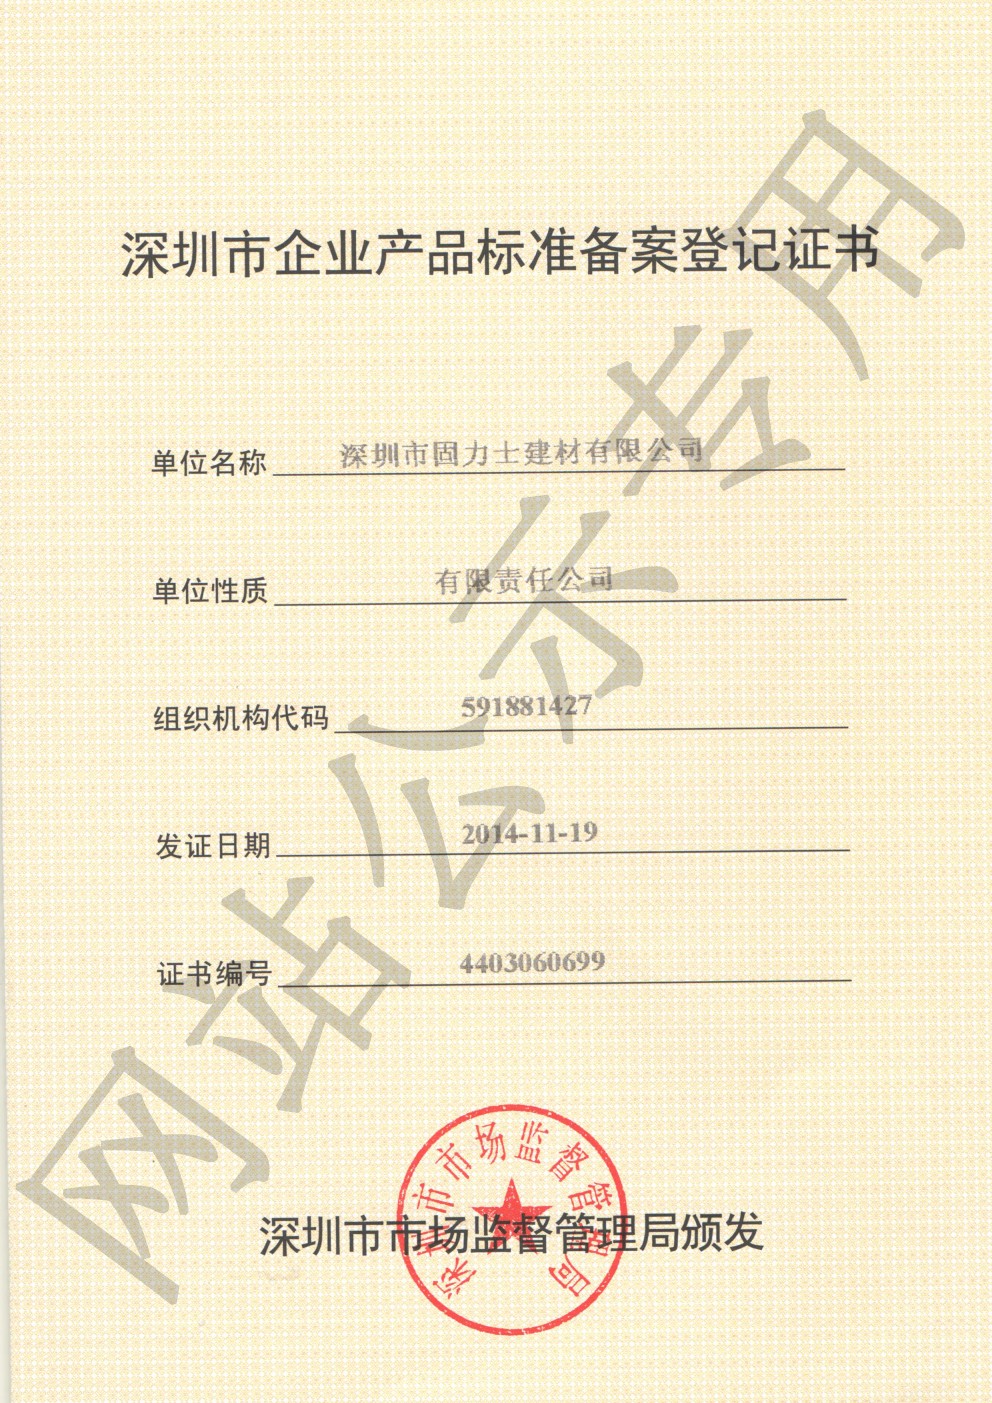 沙坪坝企业产品标准登记证书